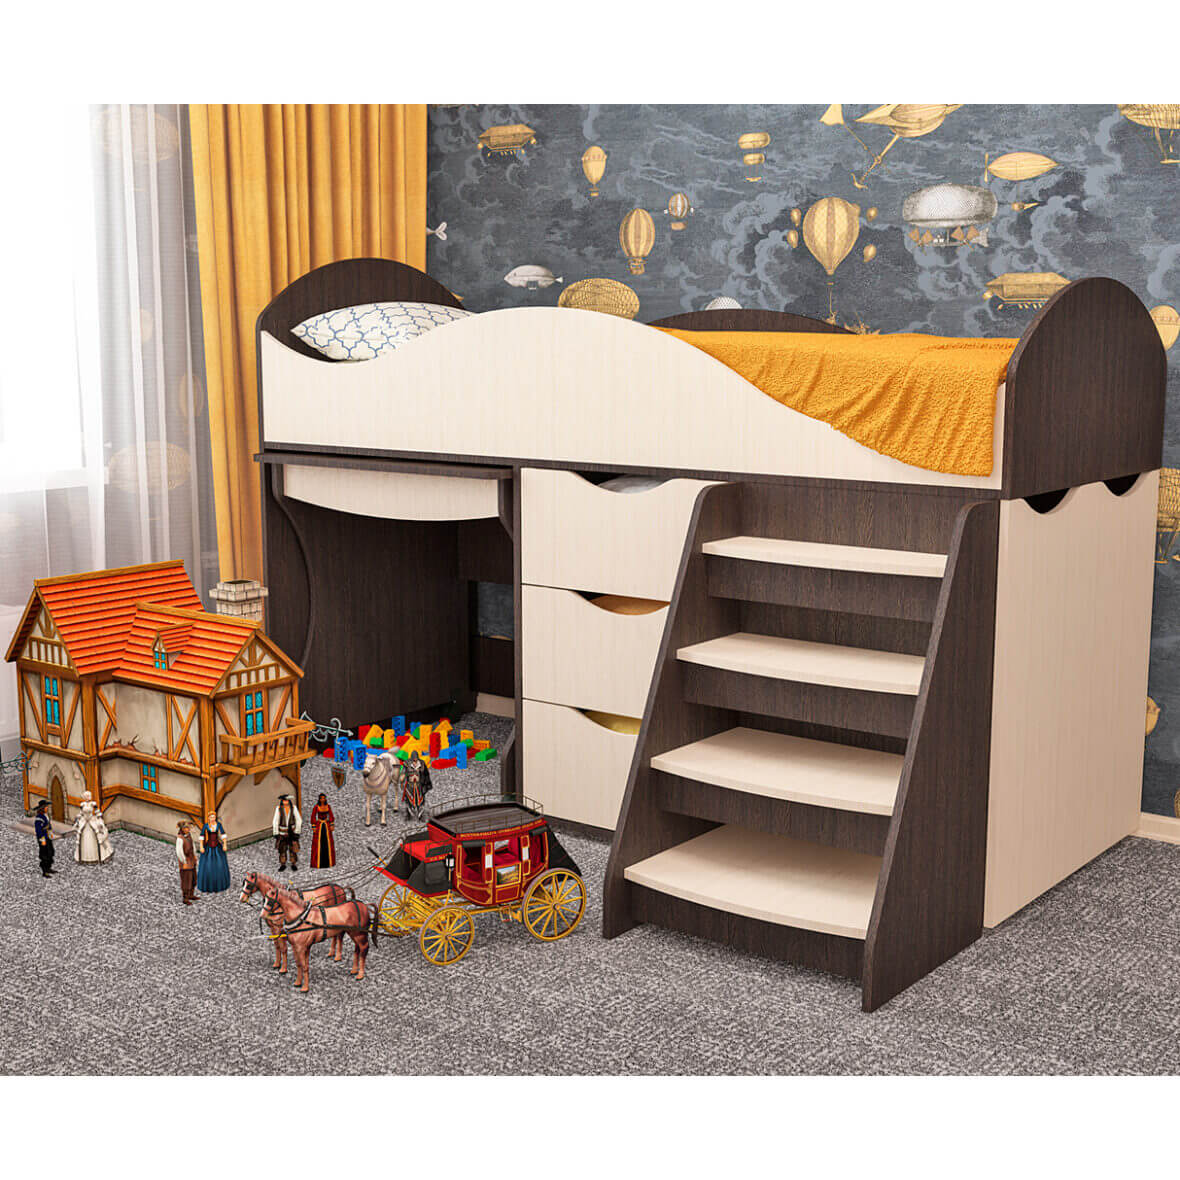 Кровать детская со столиком и ящиками Тошка венге-мол